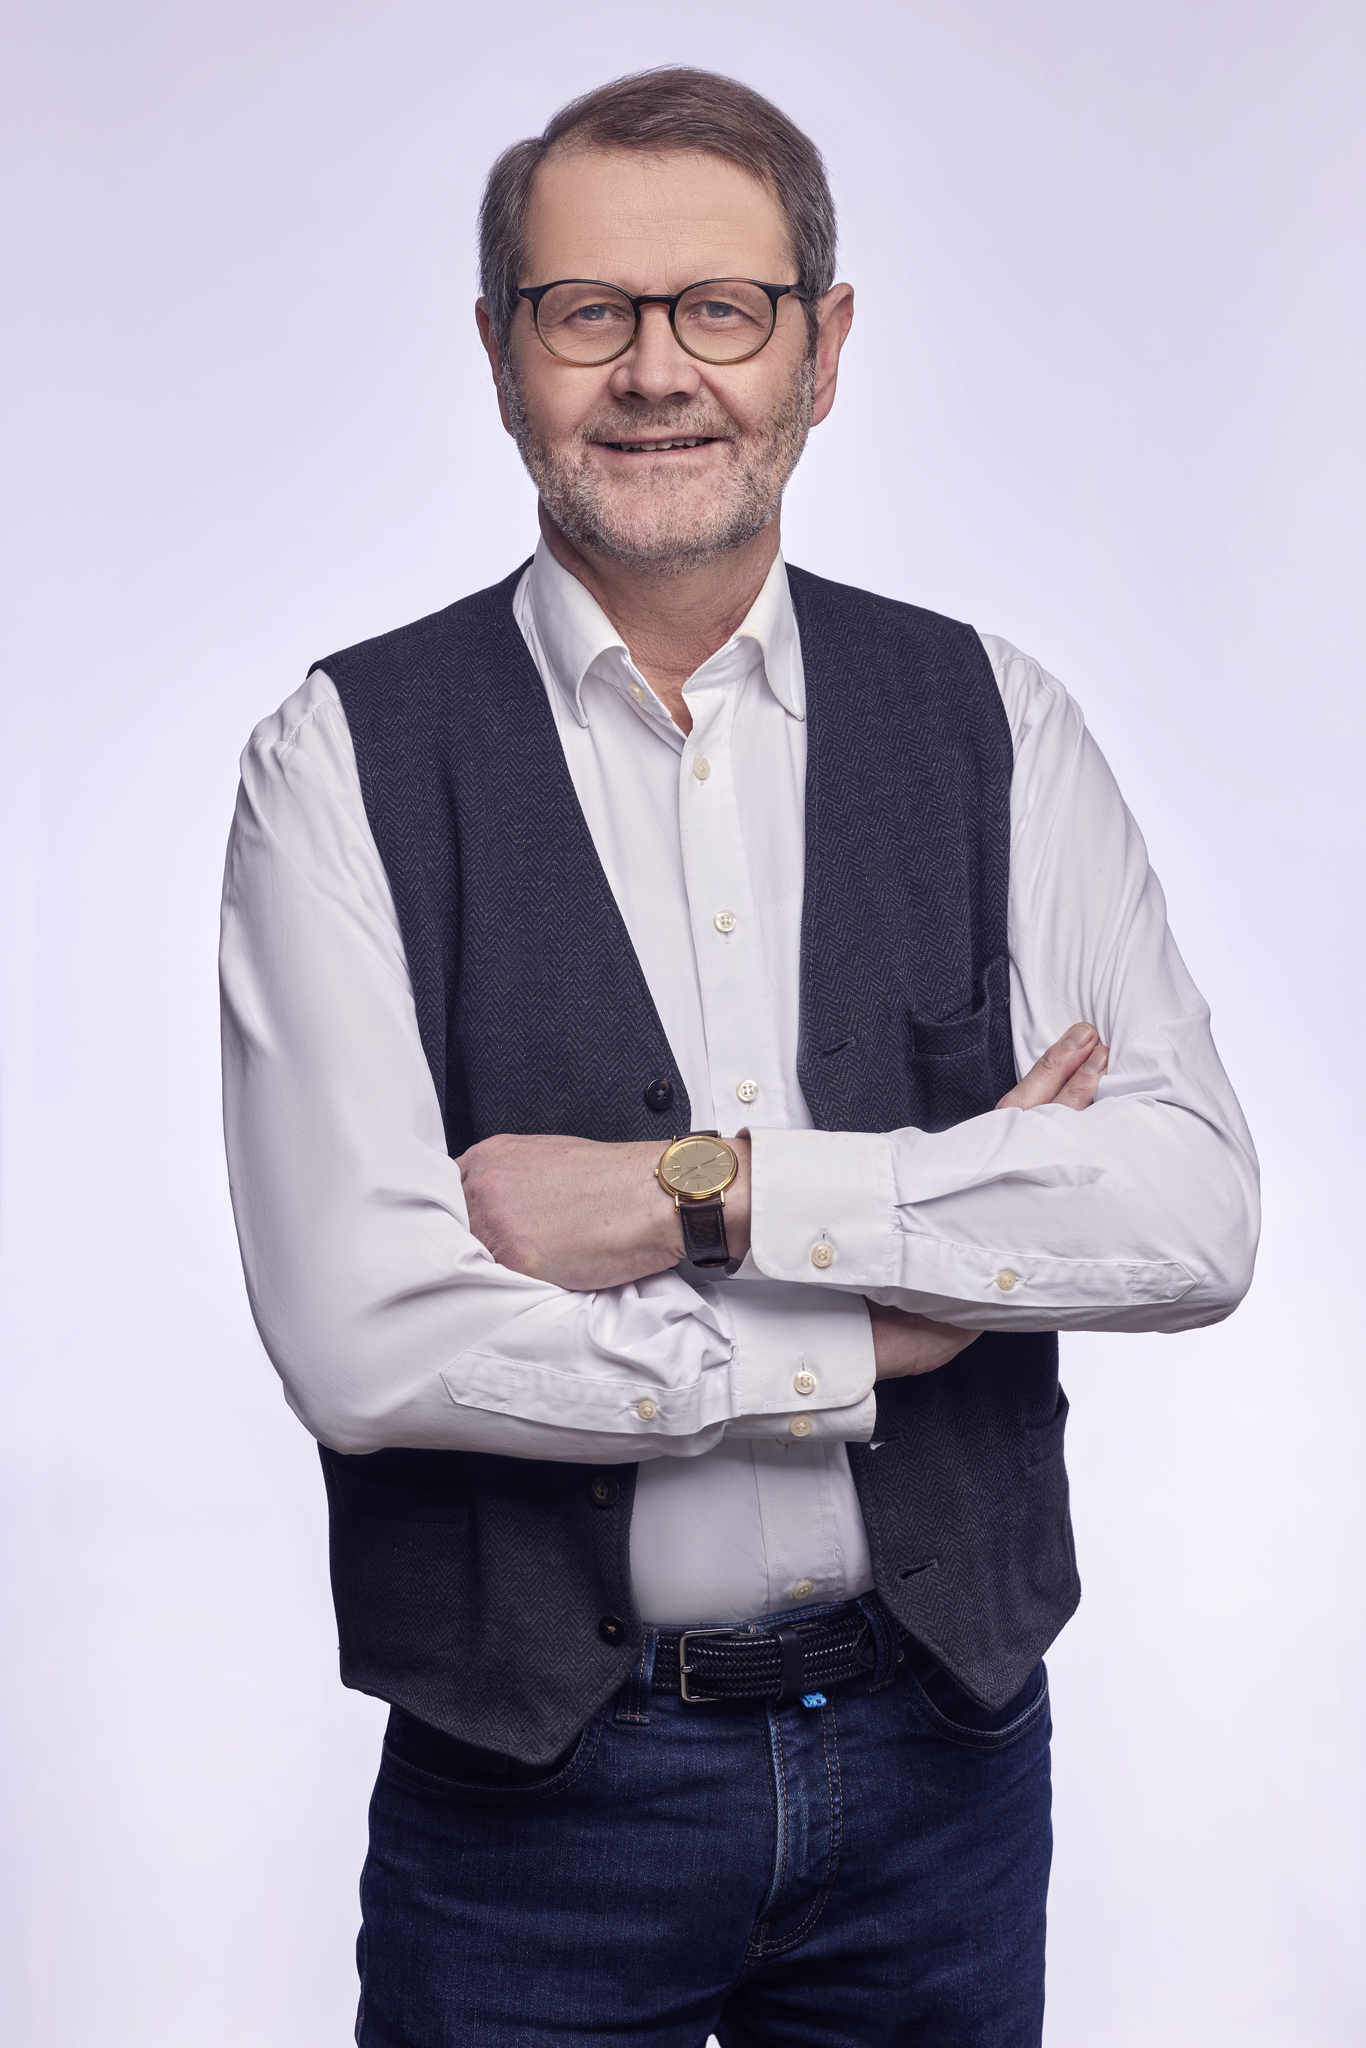 Anders Brændholt Rasmussen